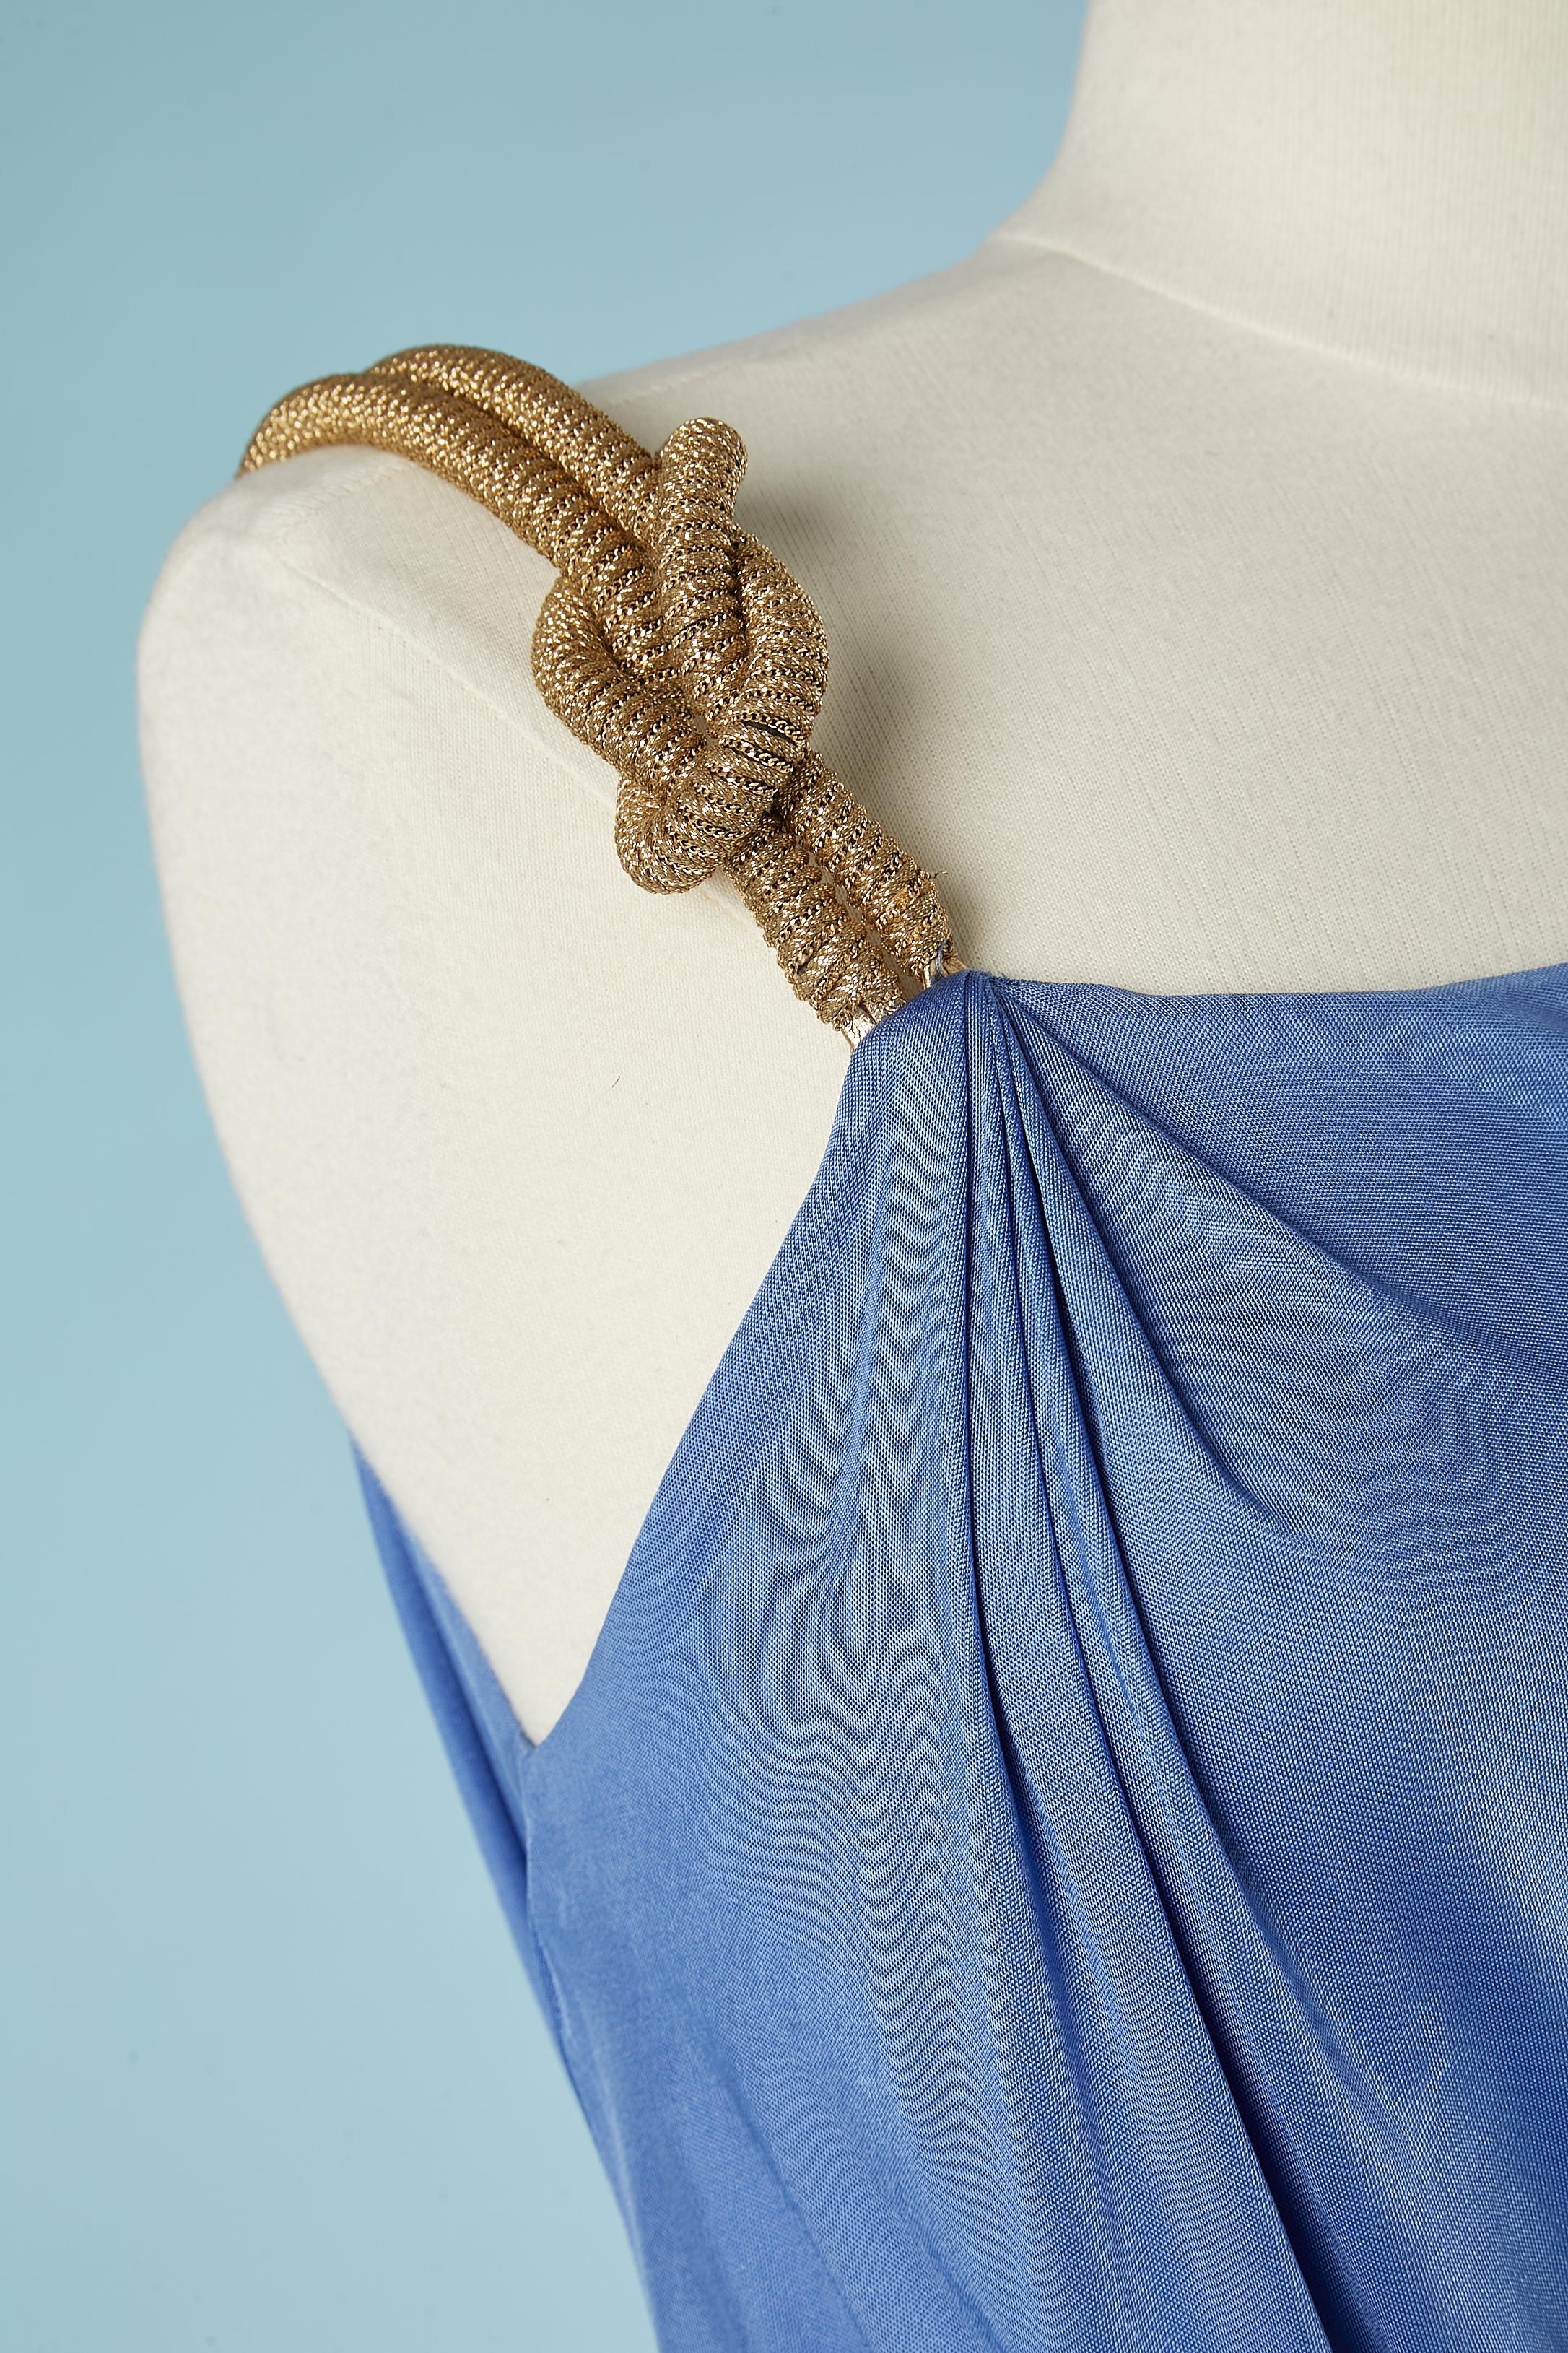 Robe asymétrique en rayonne drapée bleue avec passementerie dorée sur les épaules.
Fente sur le côté droit = 60 cm 
Tissu : 100% rayonne.
SIZE :42 (It) 38 (Fr) M